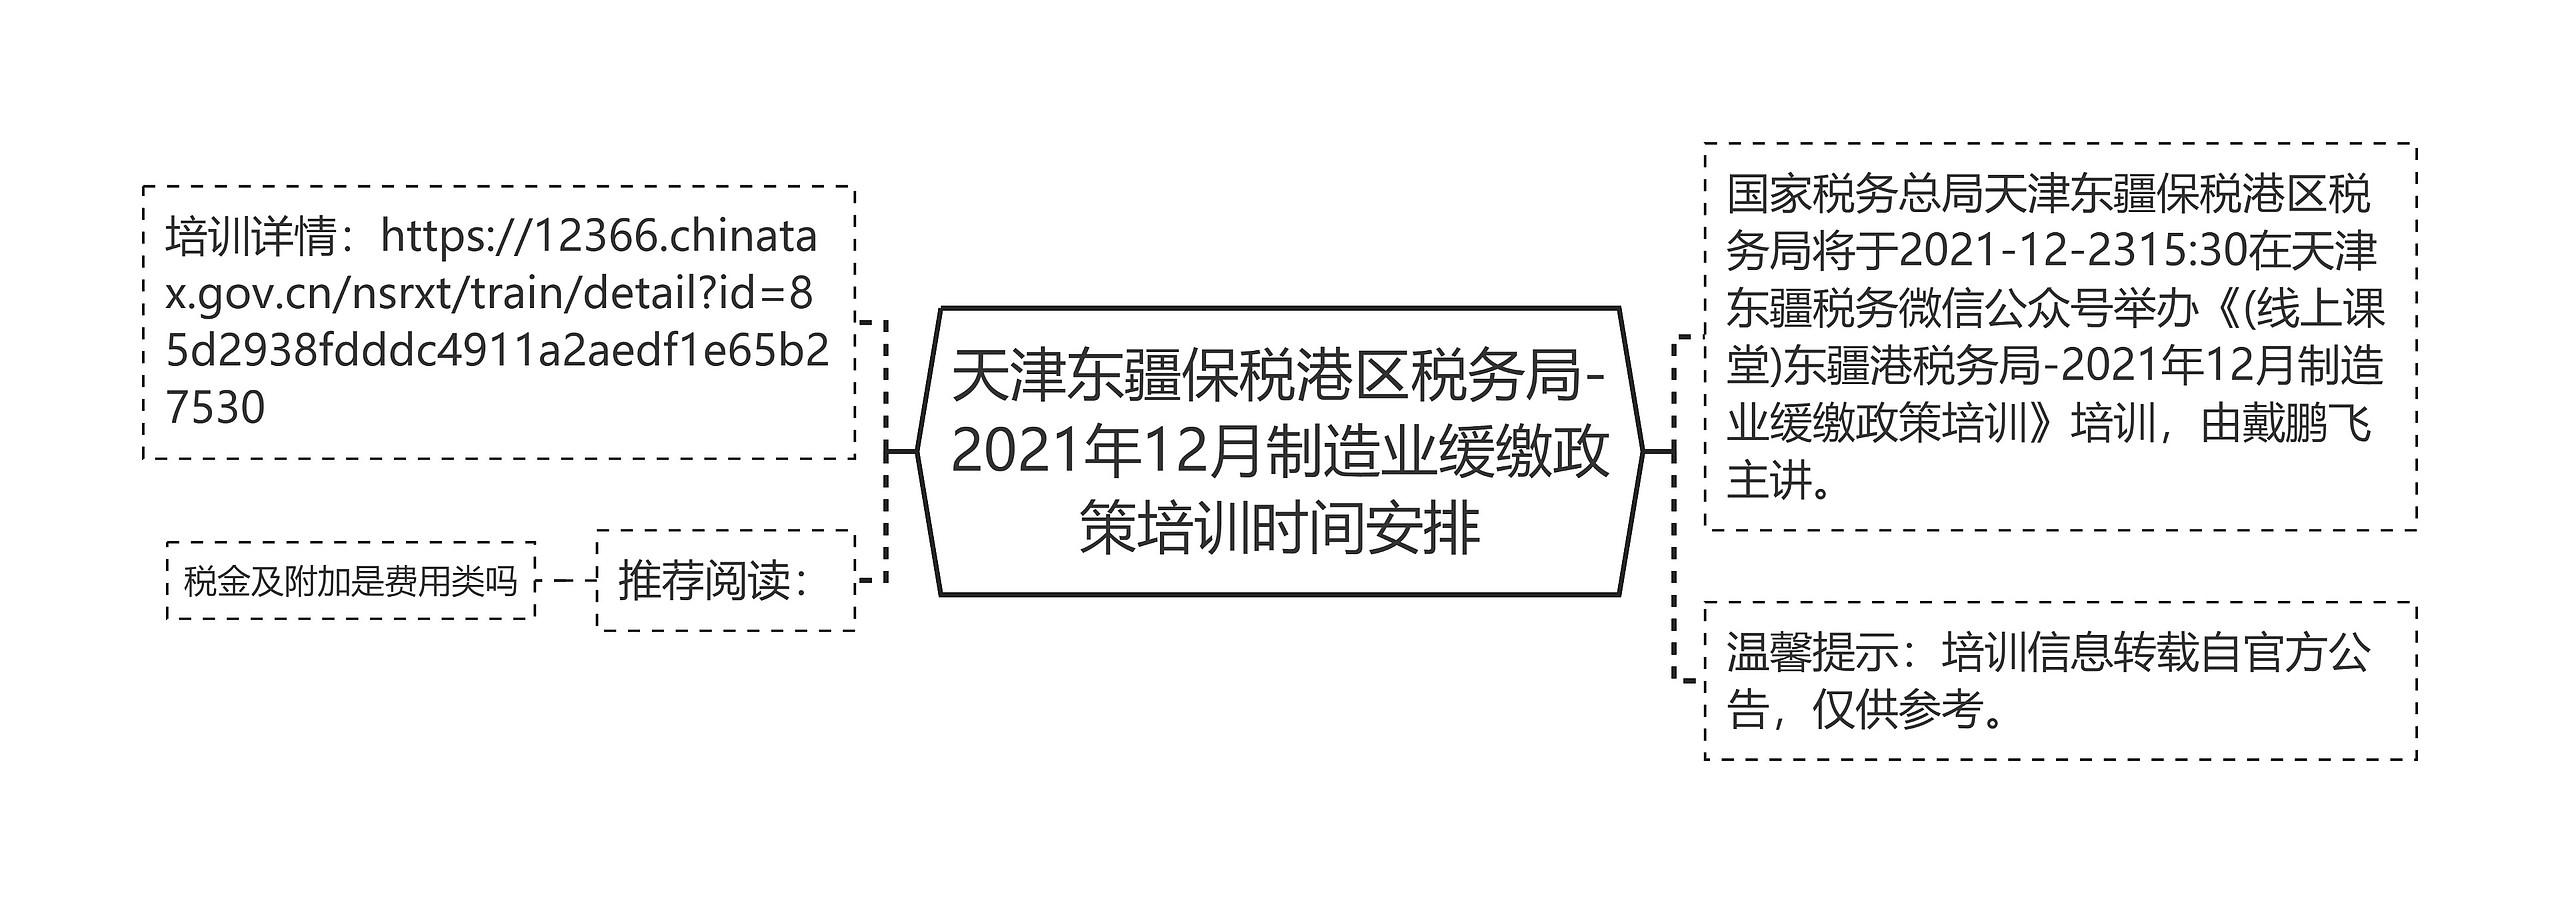 天津东疆保税港区税务局-2021年12月制造业缓缴政策培训时间安排思维导图